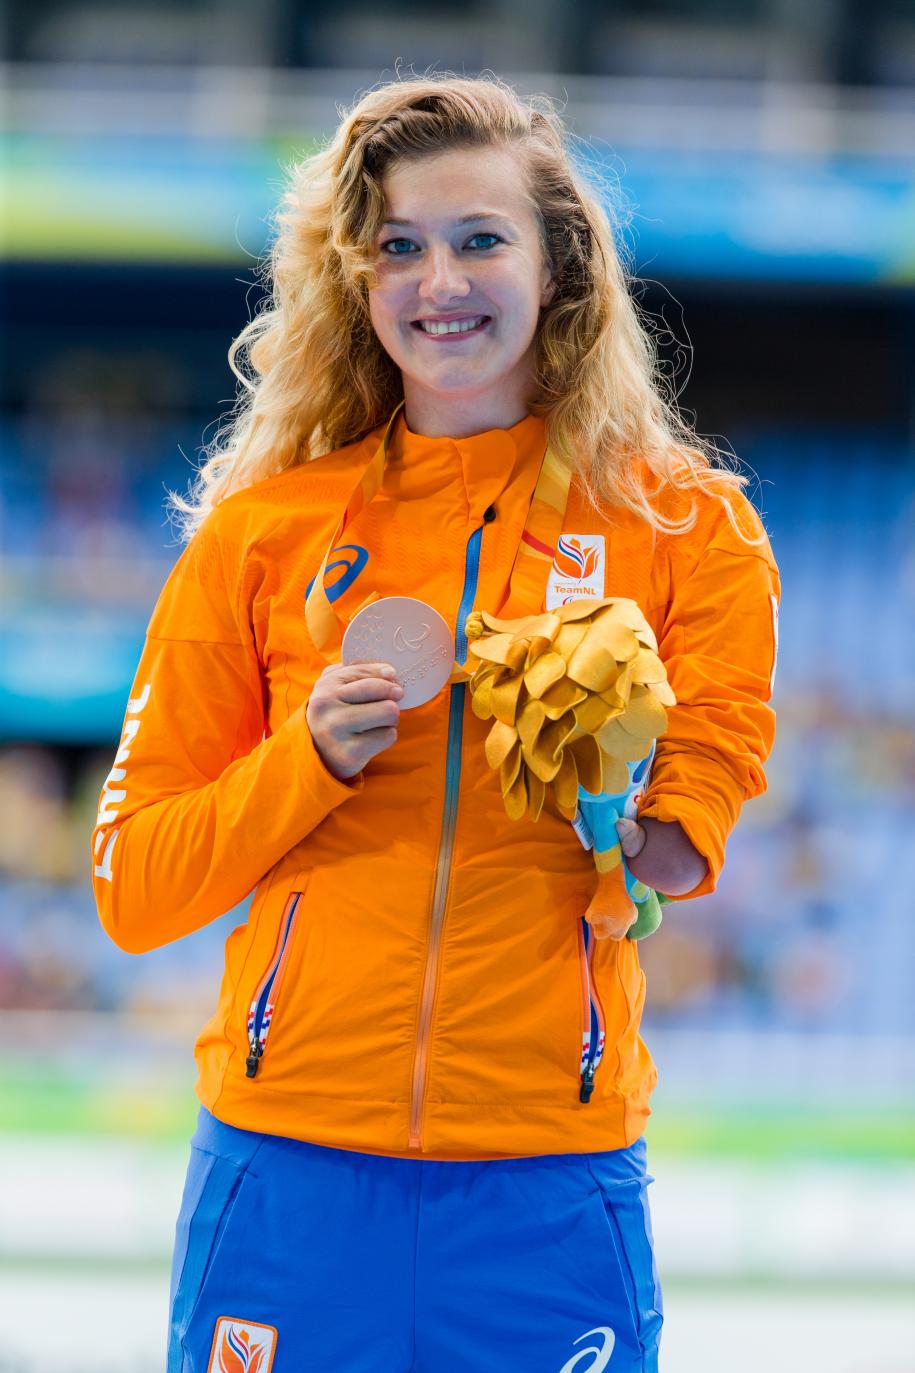 メダルを掲げるマルレーネ選手